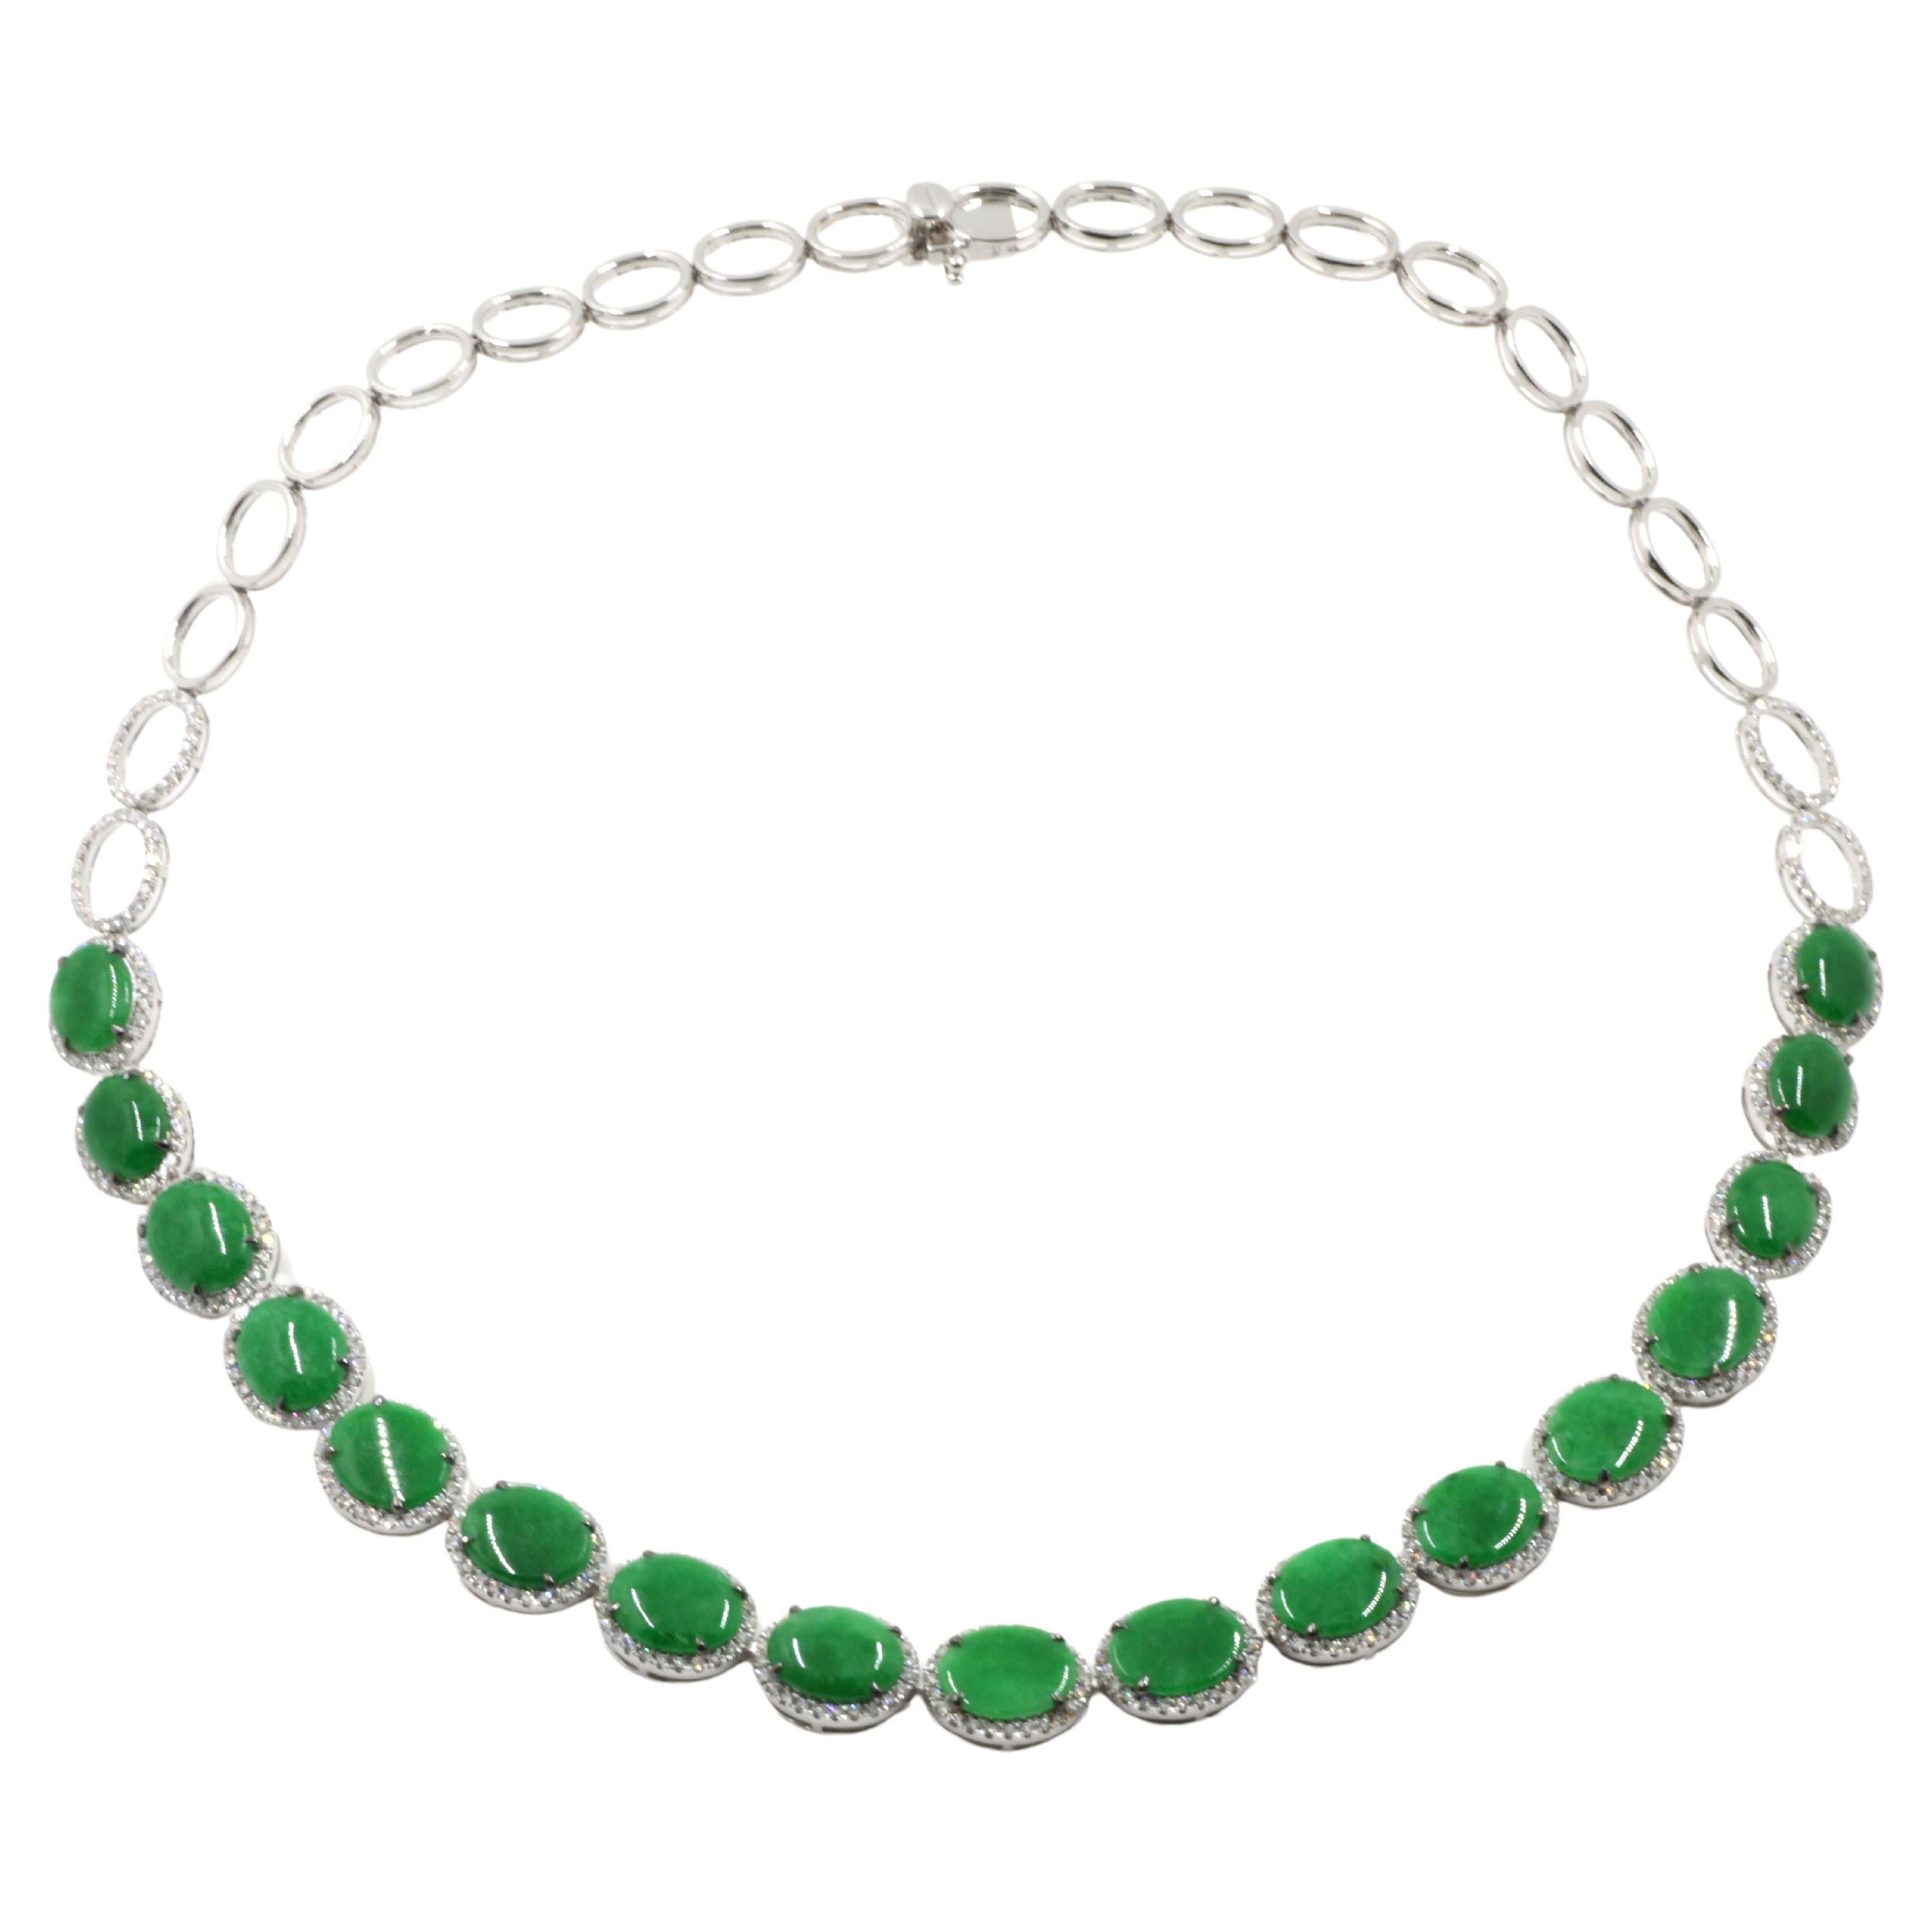 Wir stellen Ihnen unsere exquisite Vintage Apple Green Color Jadeit Burmese Jade und Diamond Choker Halskette in 18 Karat Weißgold vor. Dieses atemberaubende Schmuckstück strahlt Eleganz und Raffinesse aus und fängt die Essenz zeitloser Schönheit